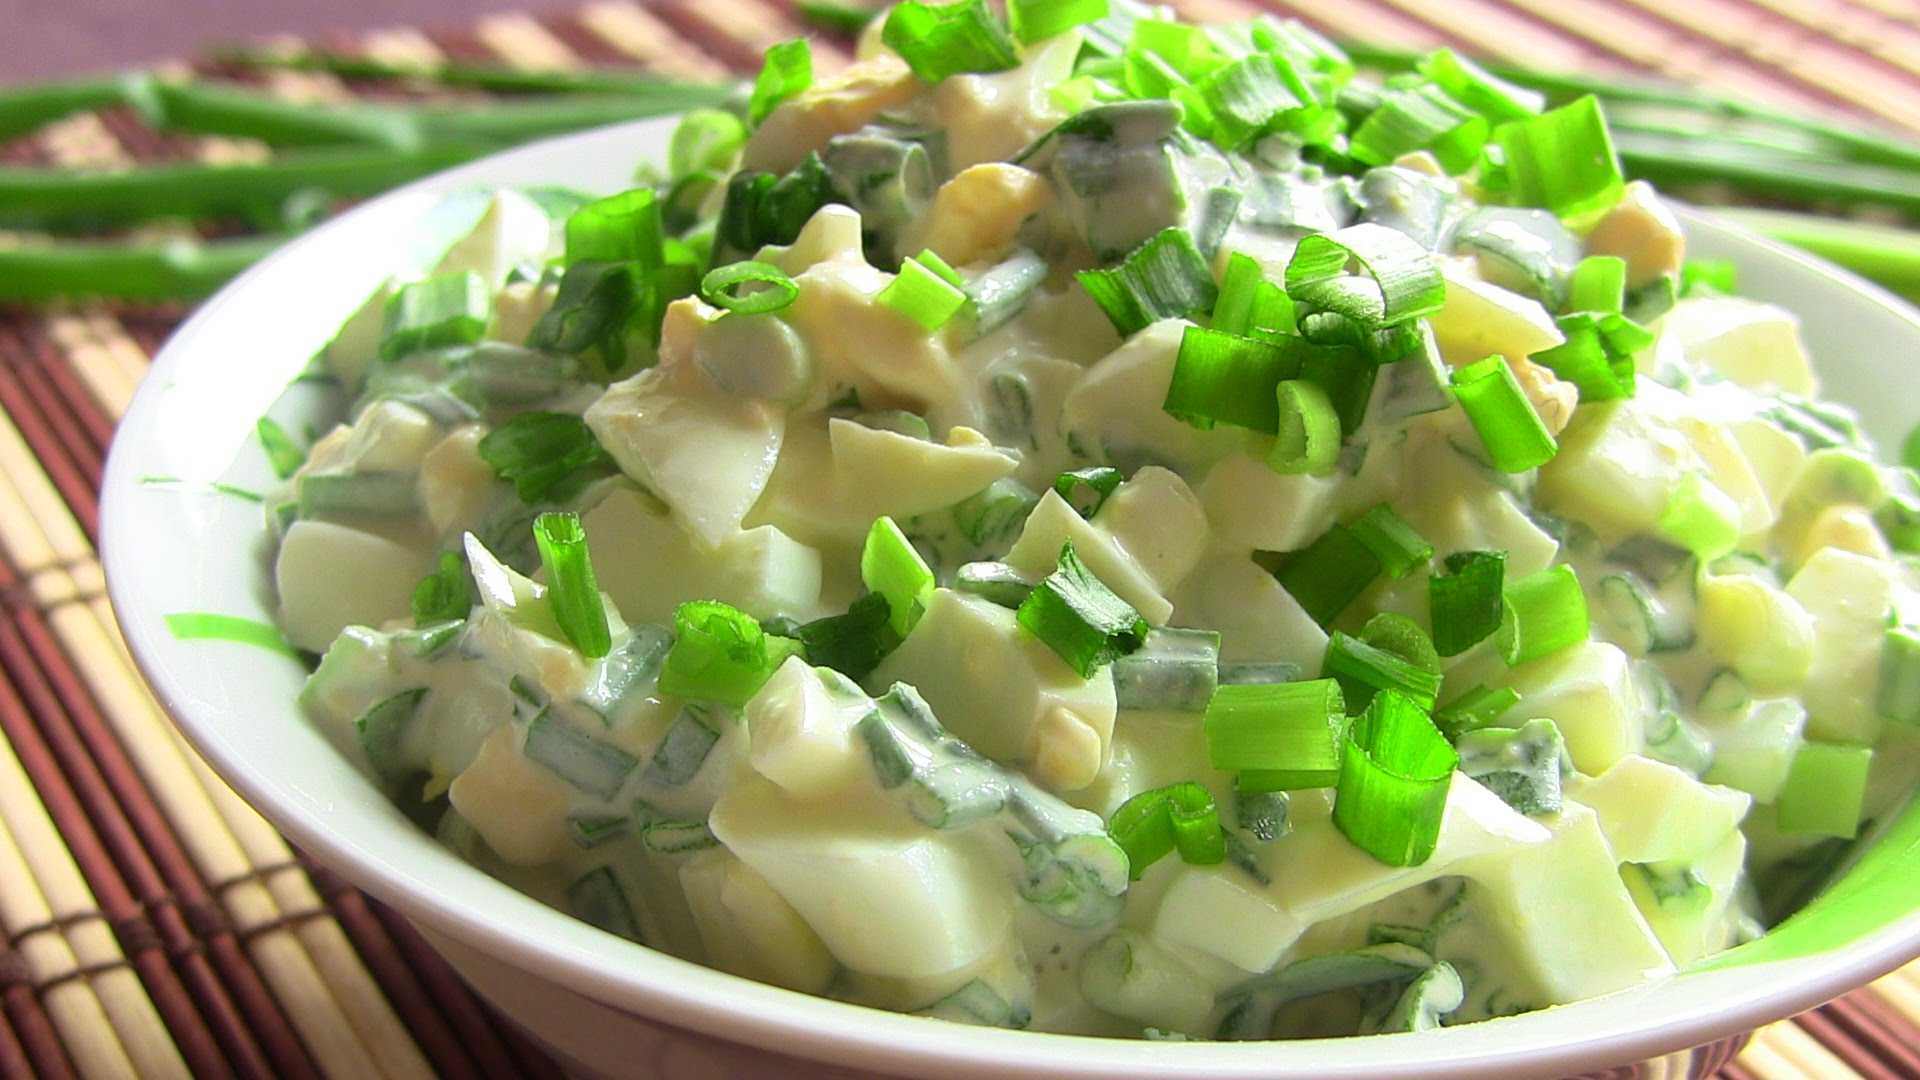 Салат с луком и яйцом - бюджетное вкусное блюдо: рецепт с фото и видео